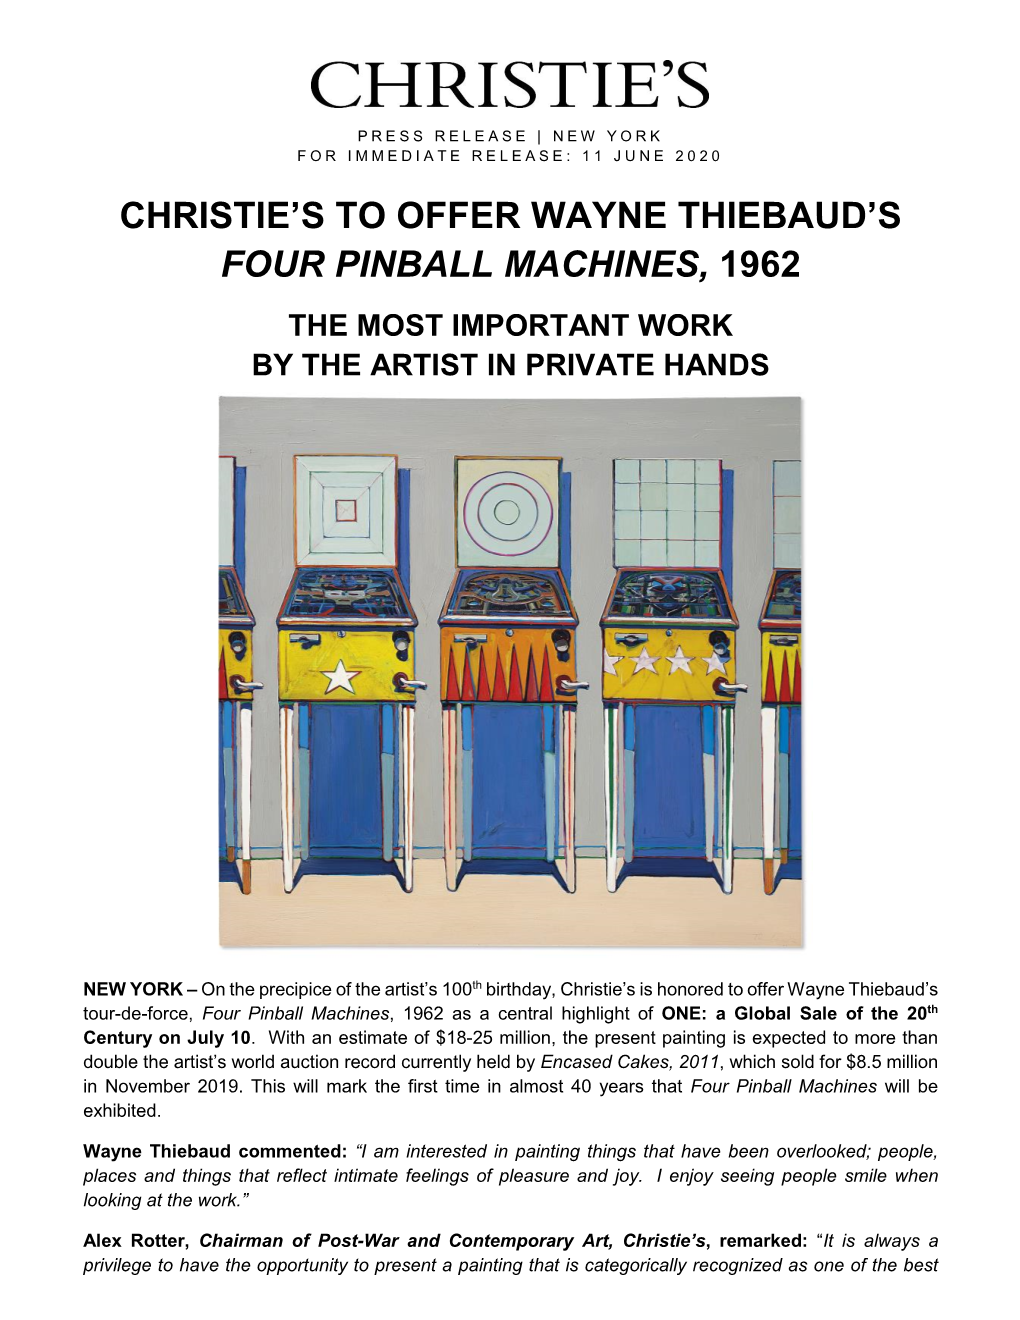 Christie's to Offer Wayne Thiebaud's Four Pinball